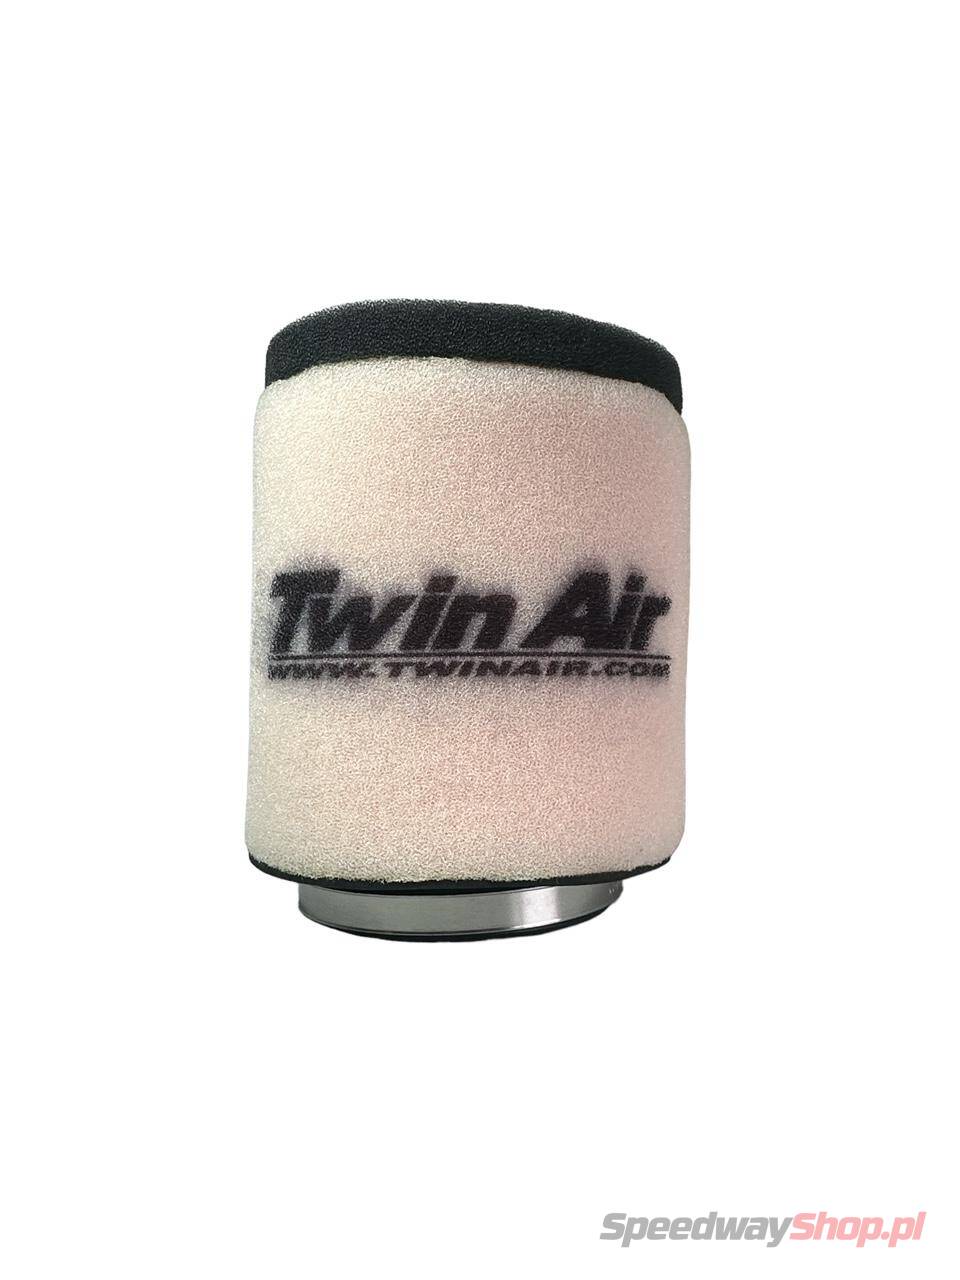 Filtr powietrza gąbkowy Twin Air 73mm